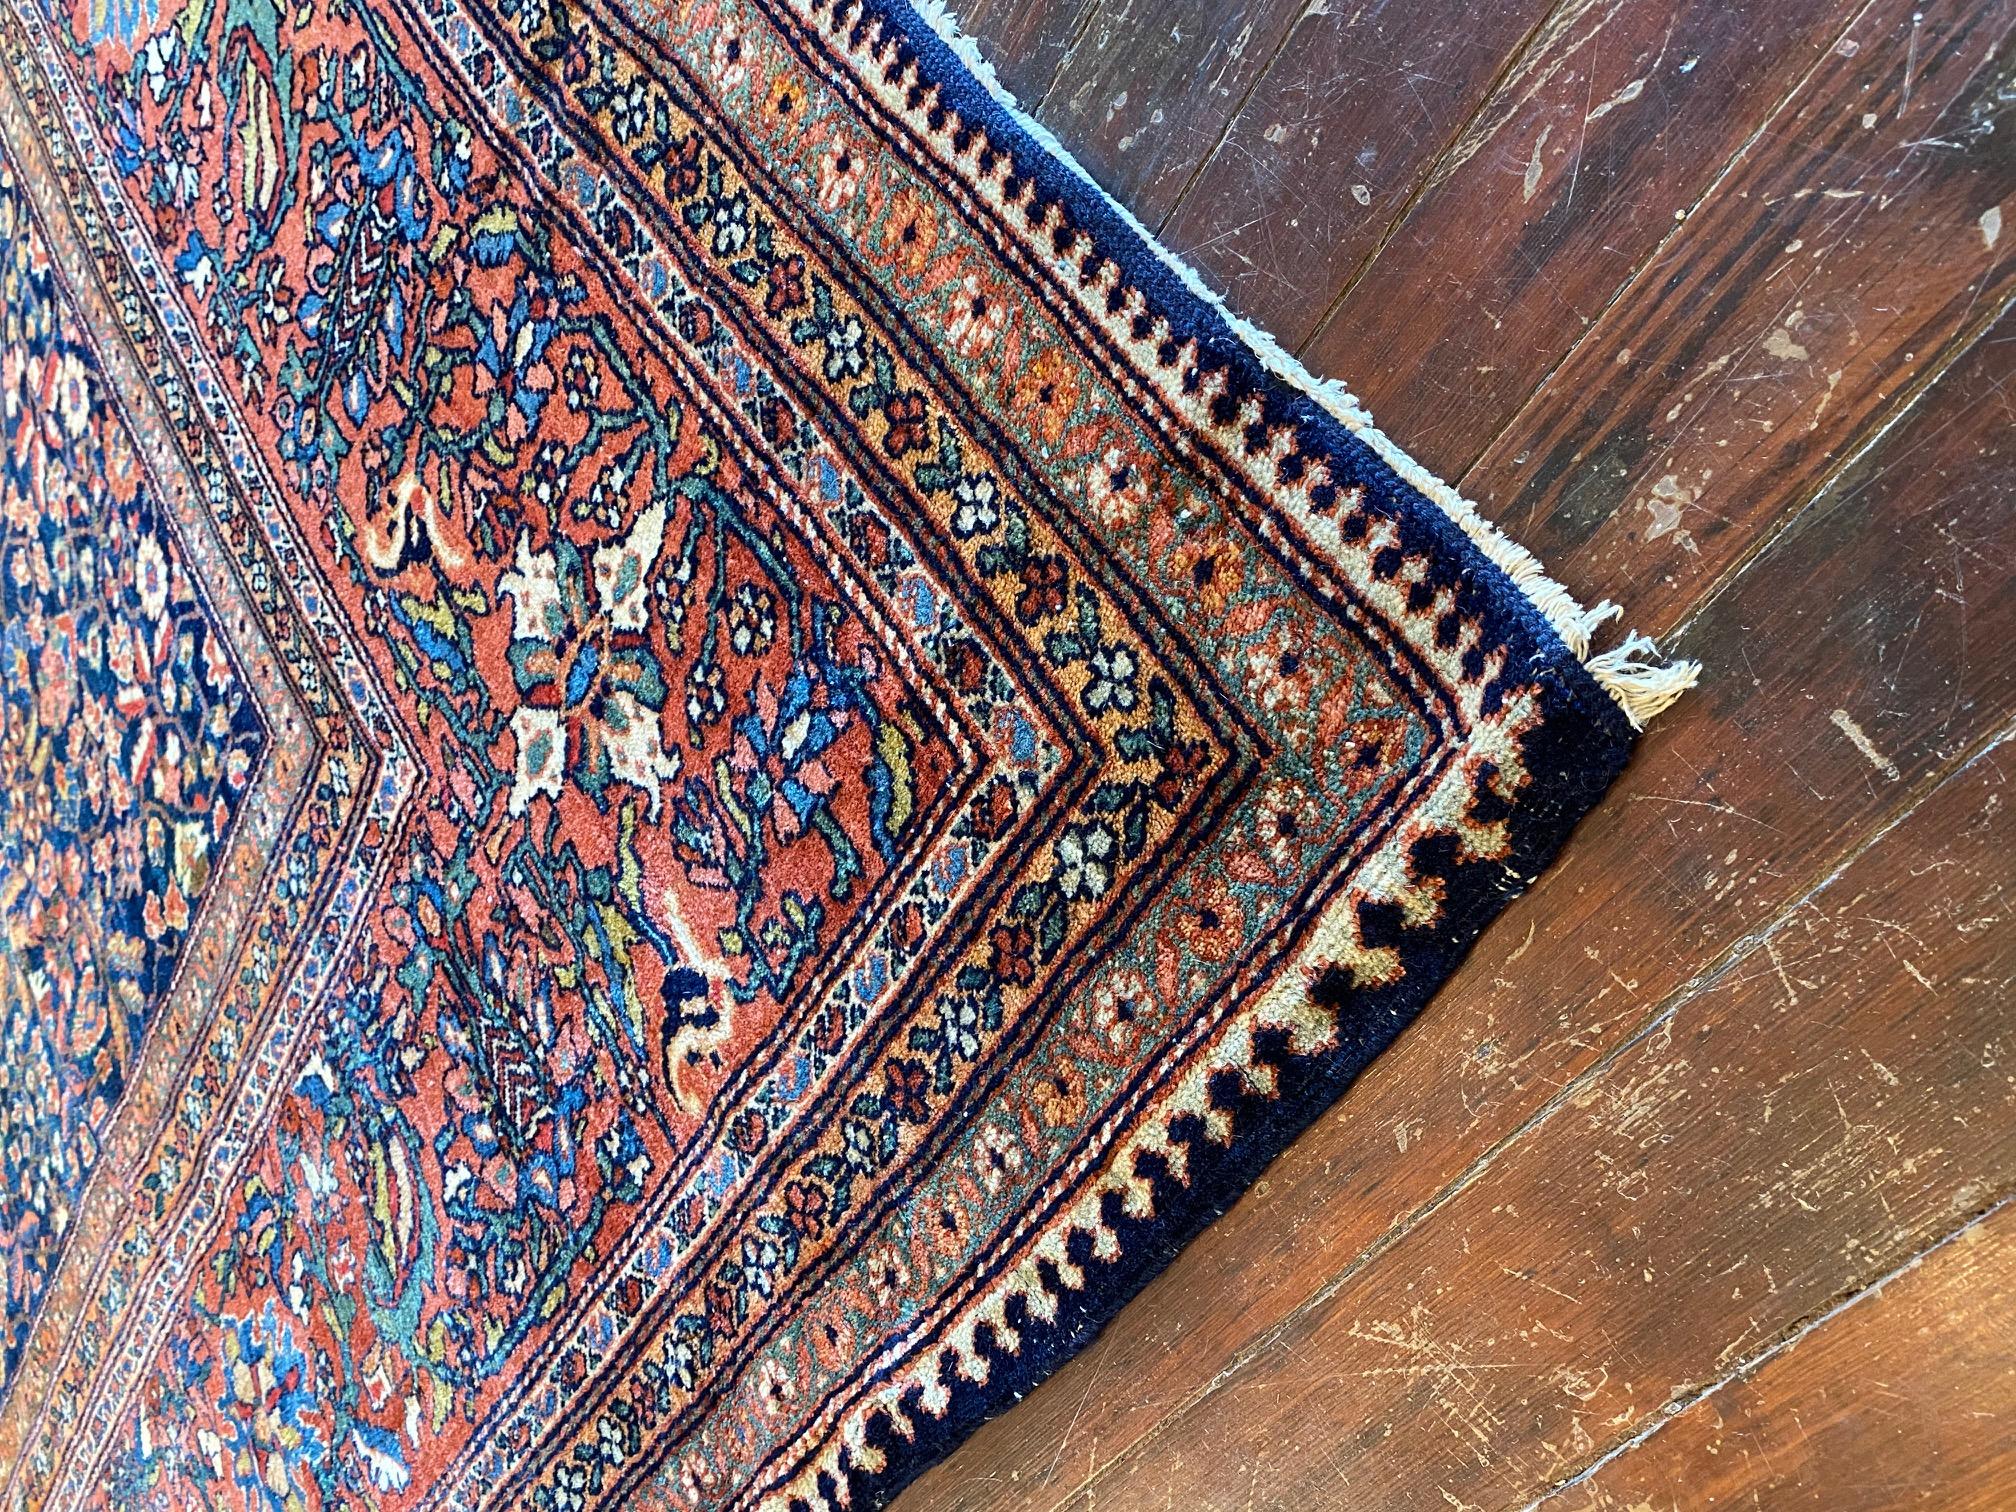 Lassen Sie sich von der Pracht des prächtigen persischen Sarouk Far-Teppichs aus den 1900er Jahren verzaubern, einem wahren Meisterwerk, das zeitlose Schönheit ausstrahlt. Dieser außergewöhnliche Teppich besticht durch seine unglaubliche Größe: Er